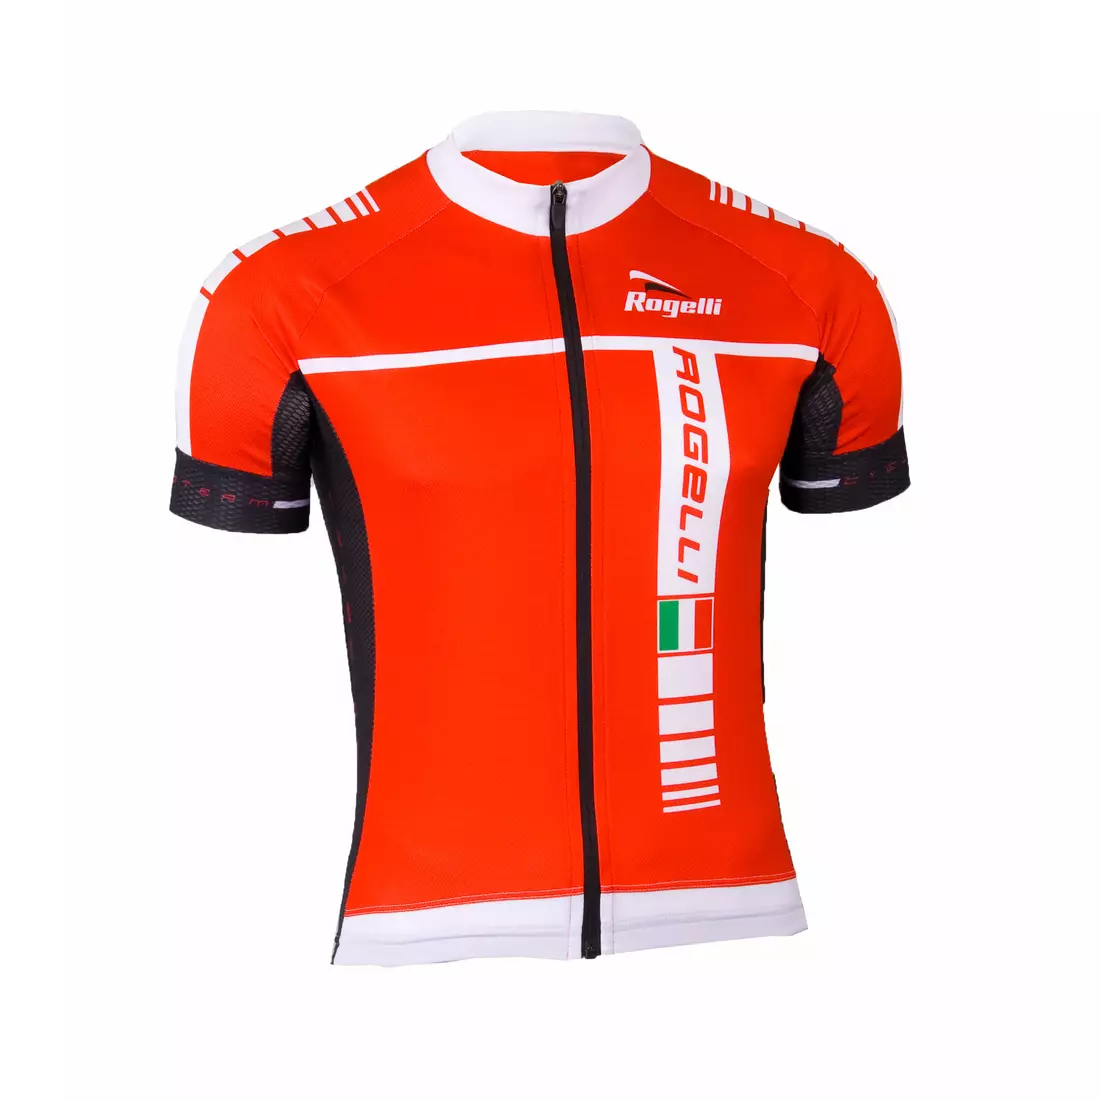 Pánsky cyklistický dres ROGELLI UMBRIA, 001.232, červený